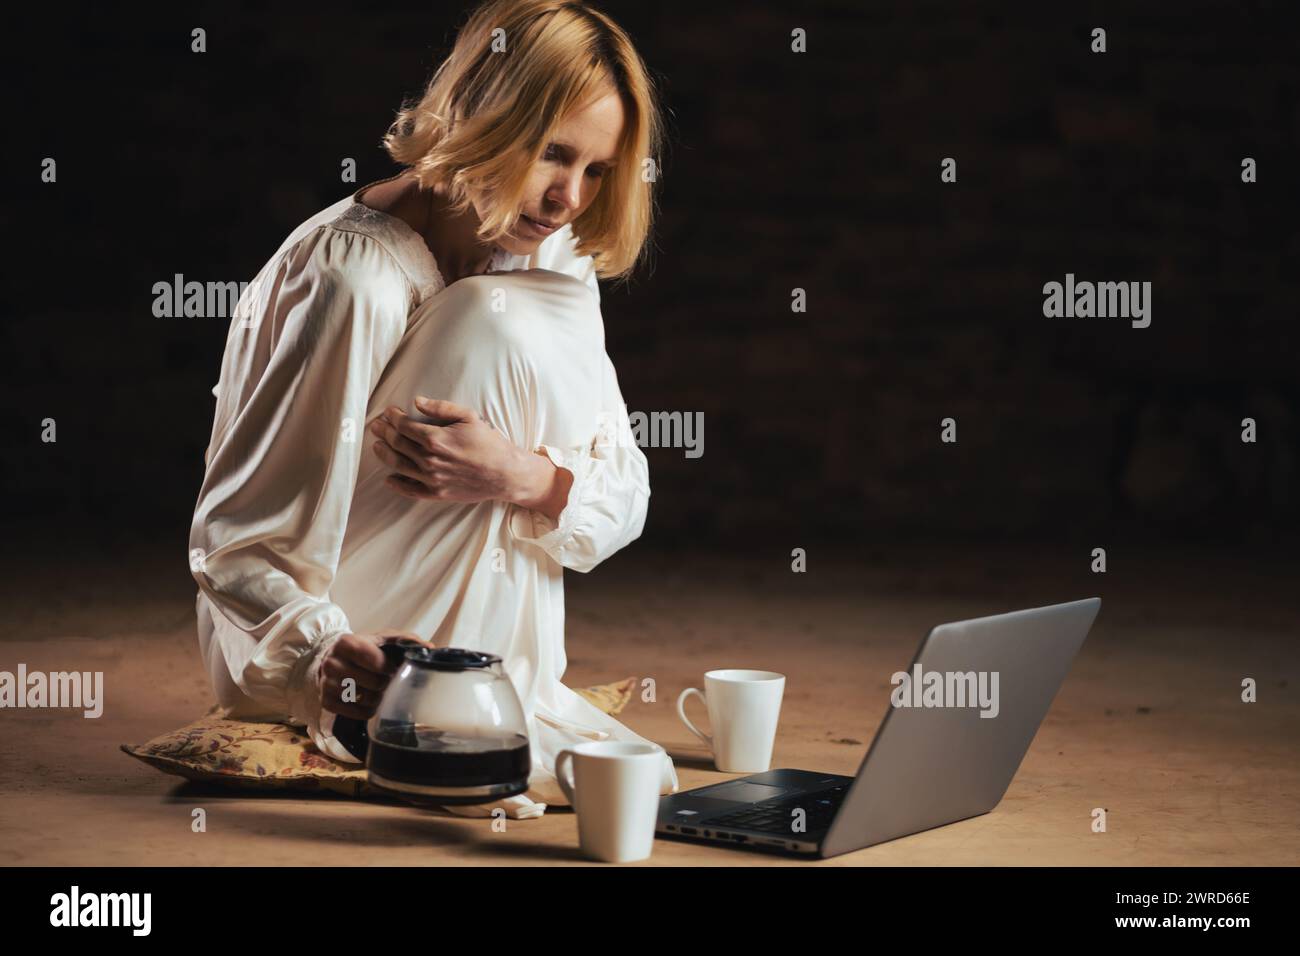 Eine Frau gießt Kaffee ein, während sie vor einem Laptop sitzt. Leerer Raum, dunkler Hintergrund. Deadline, Recycling, Fleiß-Freelancer-Konzept. Stockfoto